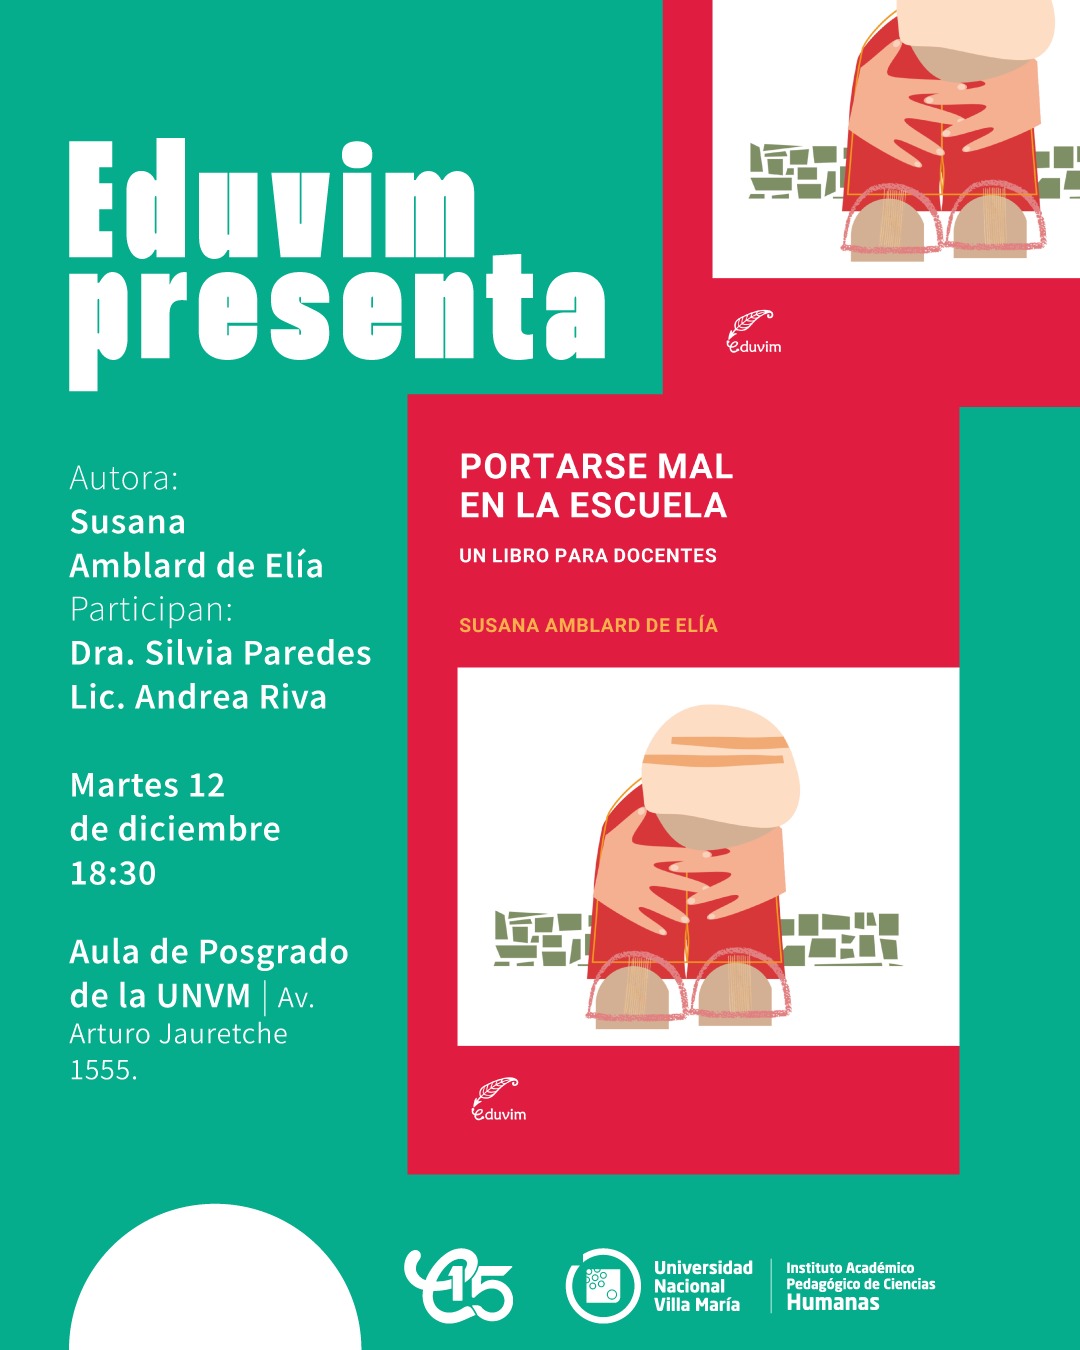 Humanas y Eduvim realizarán la presentación del libro “Portarse mal en la escuela” de Susana Amblard de Elia